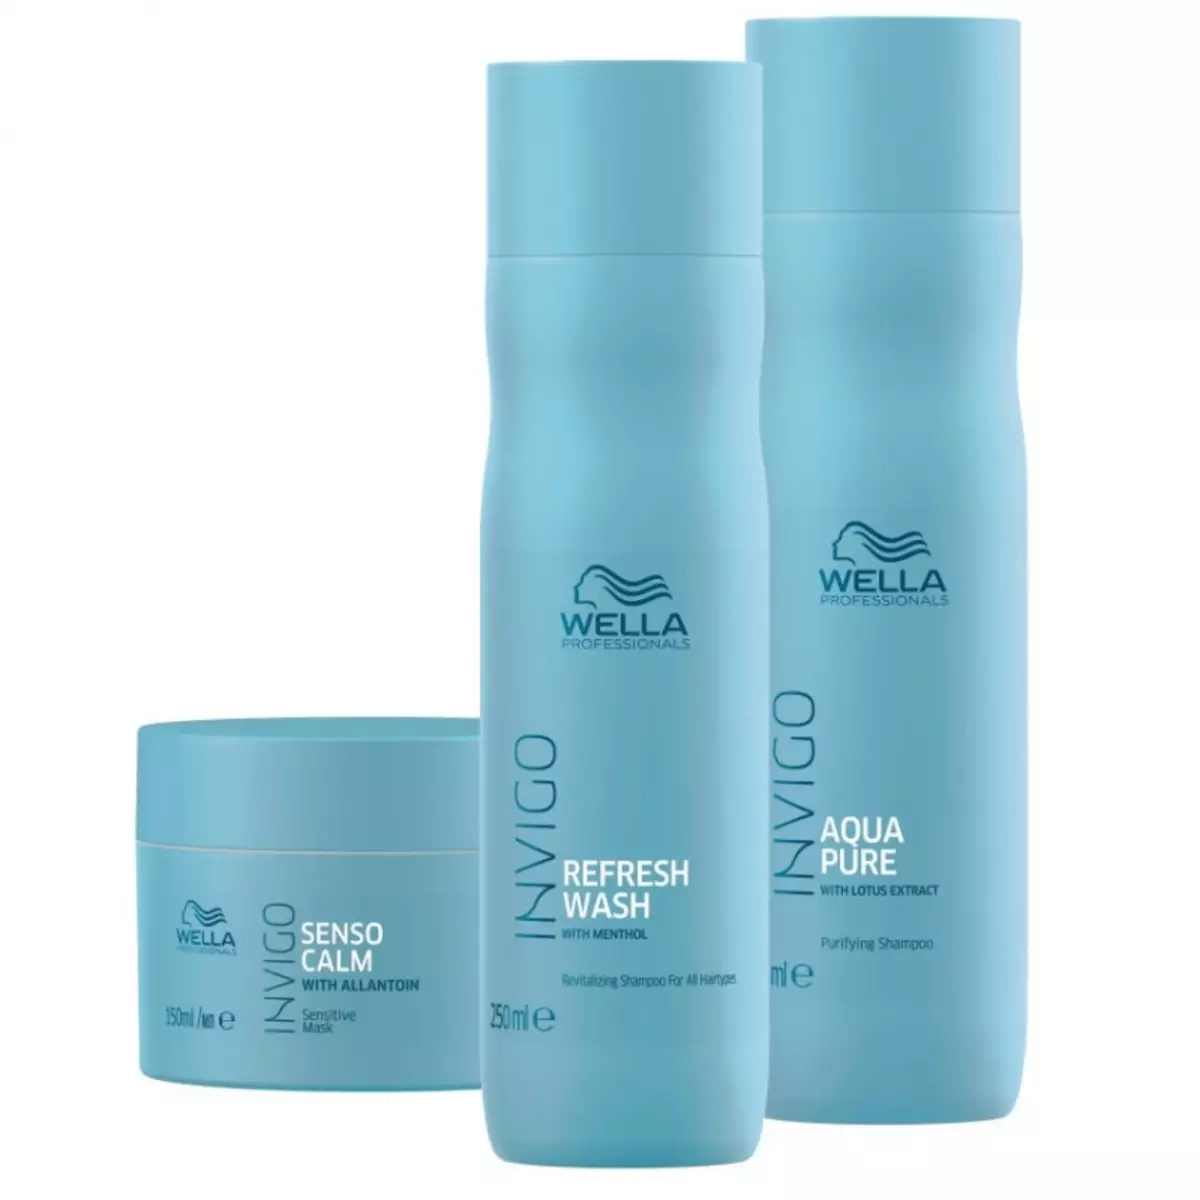 Wella Professional: Profesjonell hår kosmetikk gjennomgang, fordeler og ulemper 4770_19